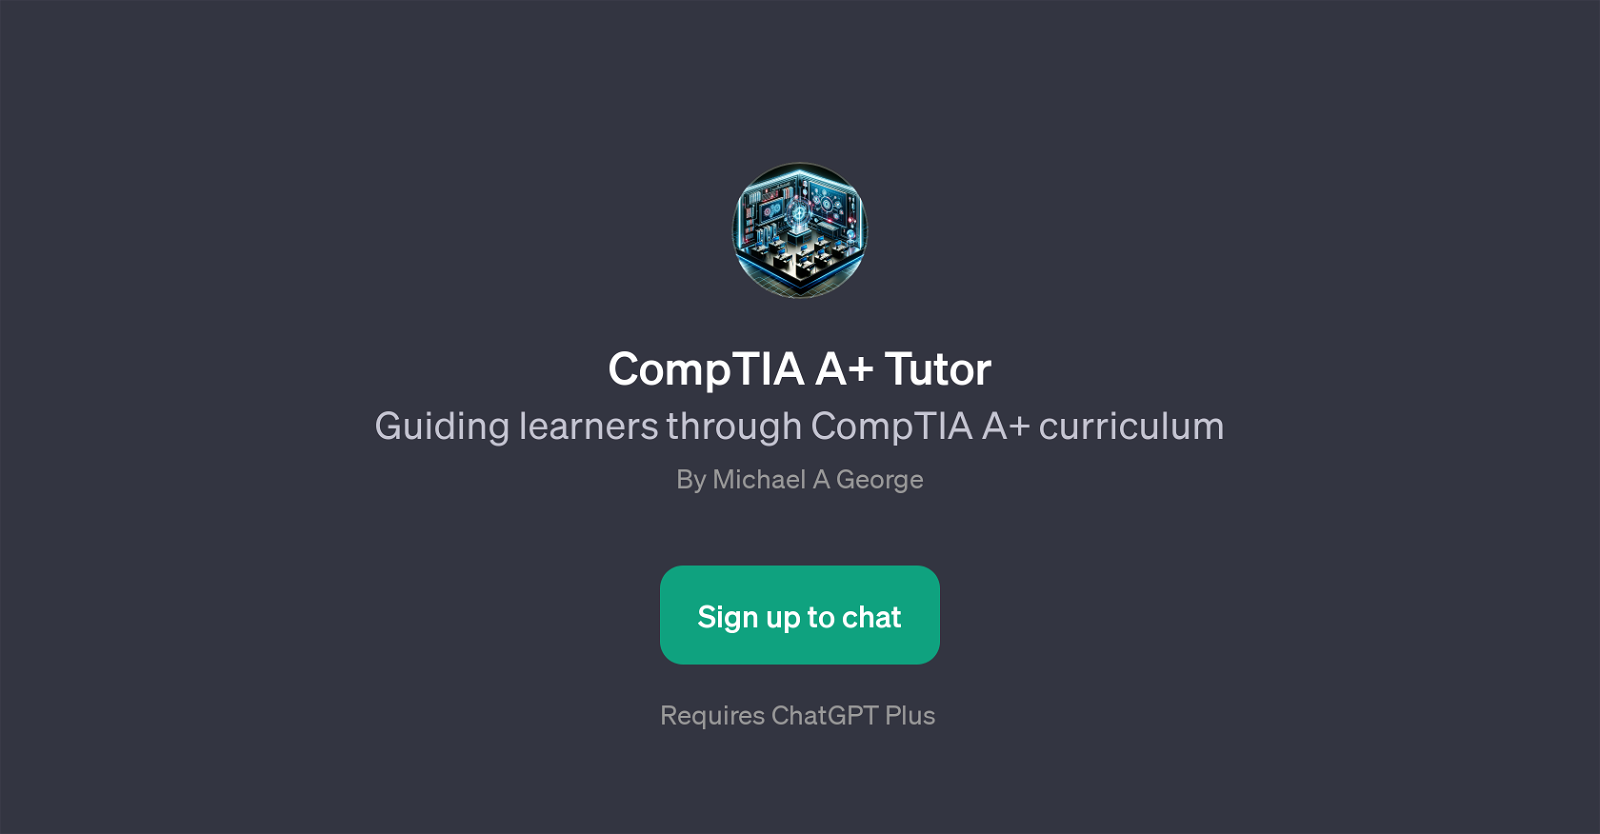 CompTIA A+ Tutor website